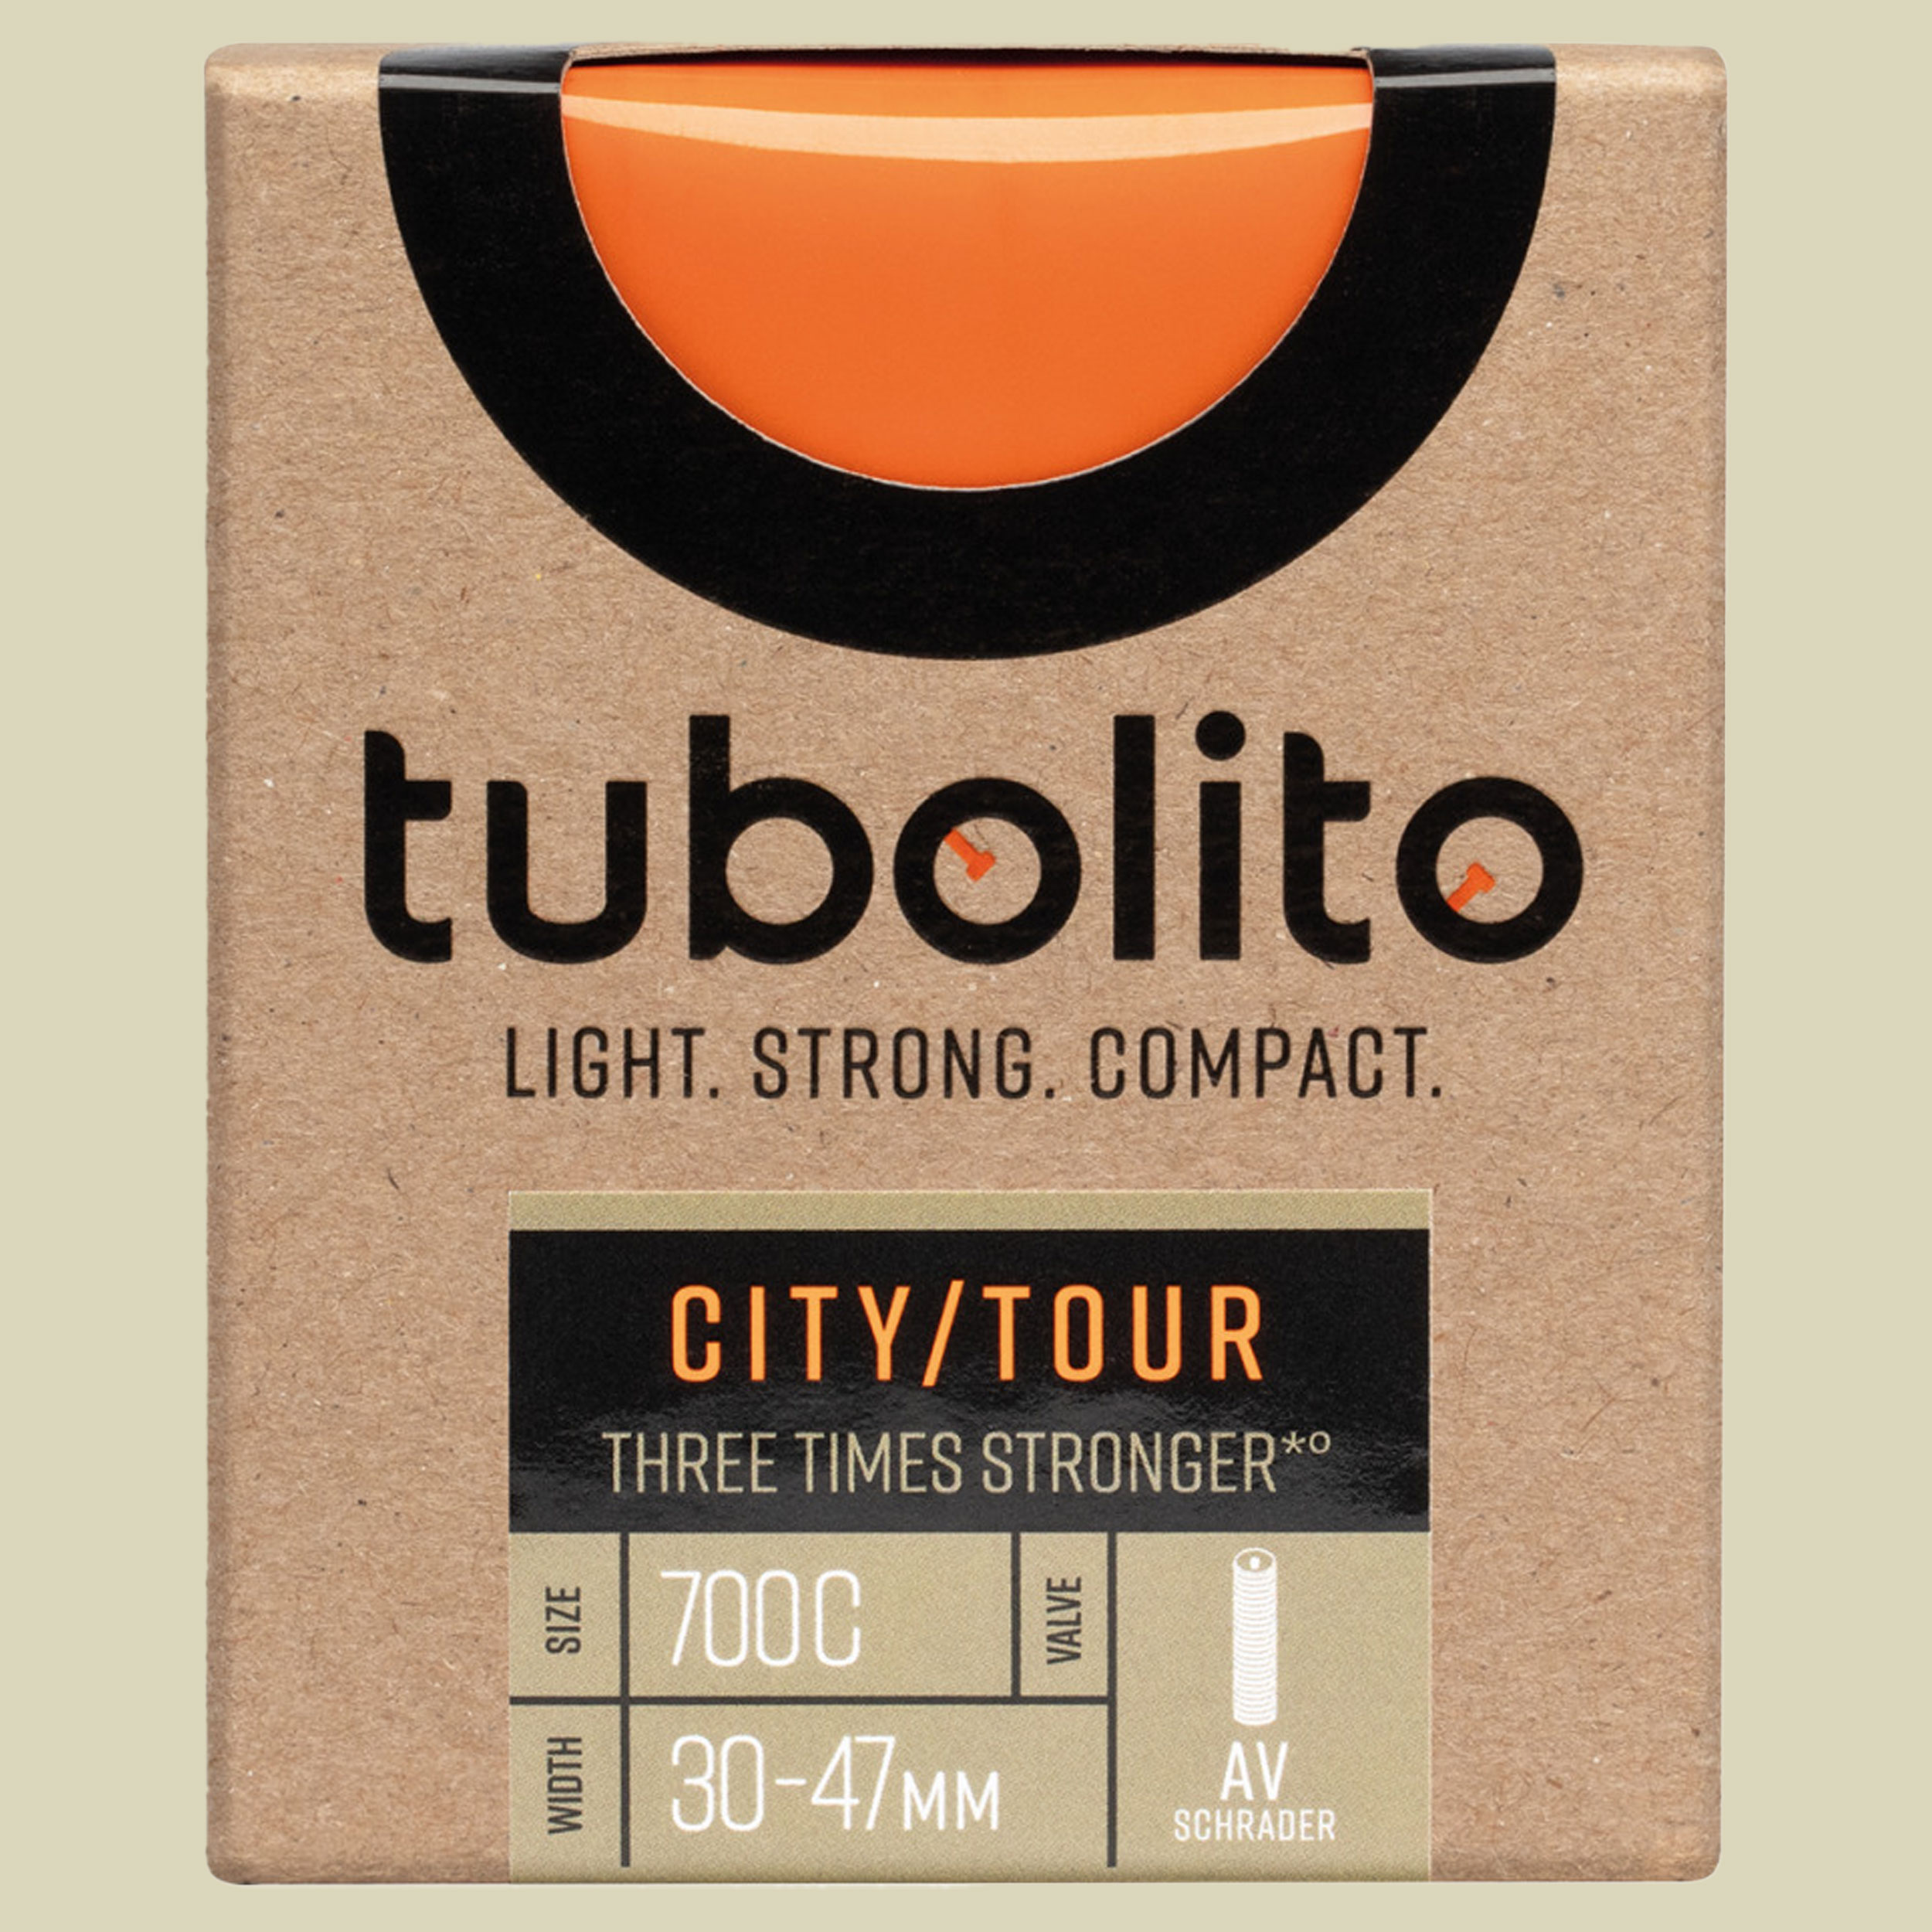 Tubo-City/Tour-AV